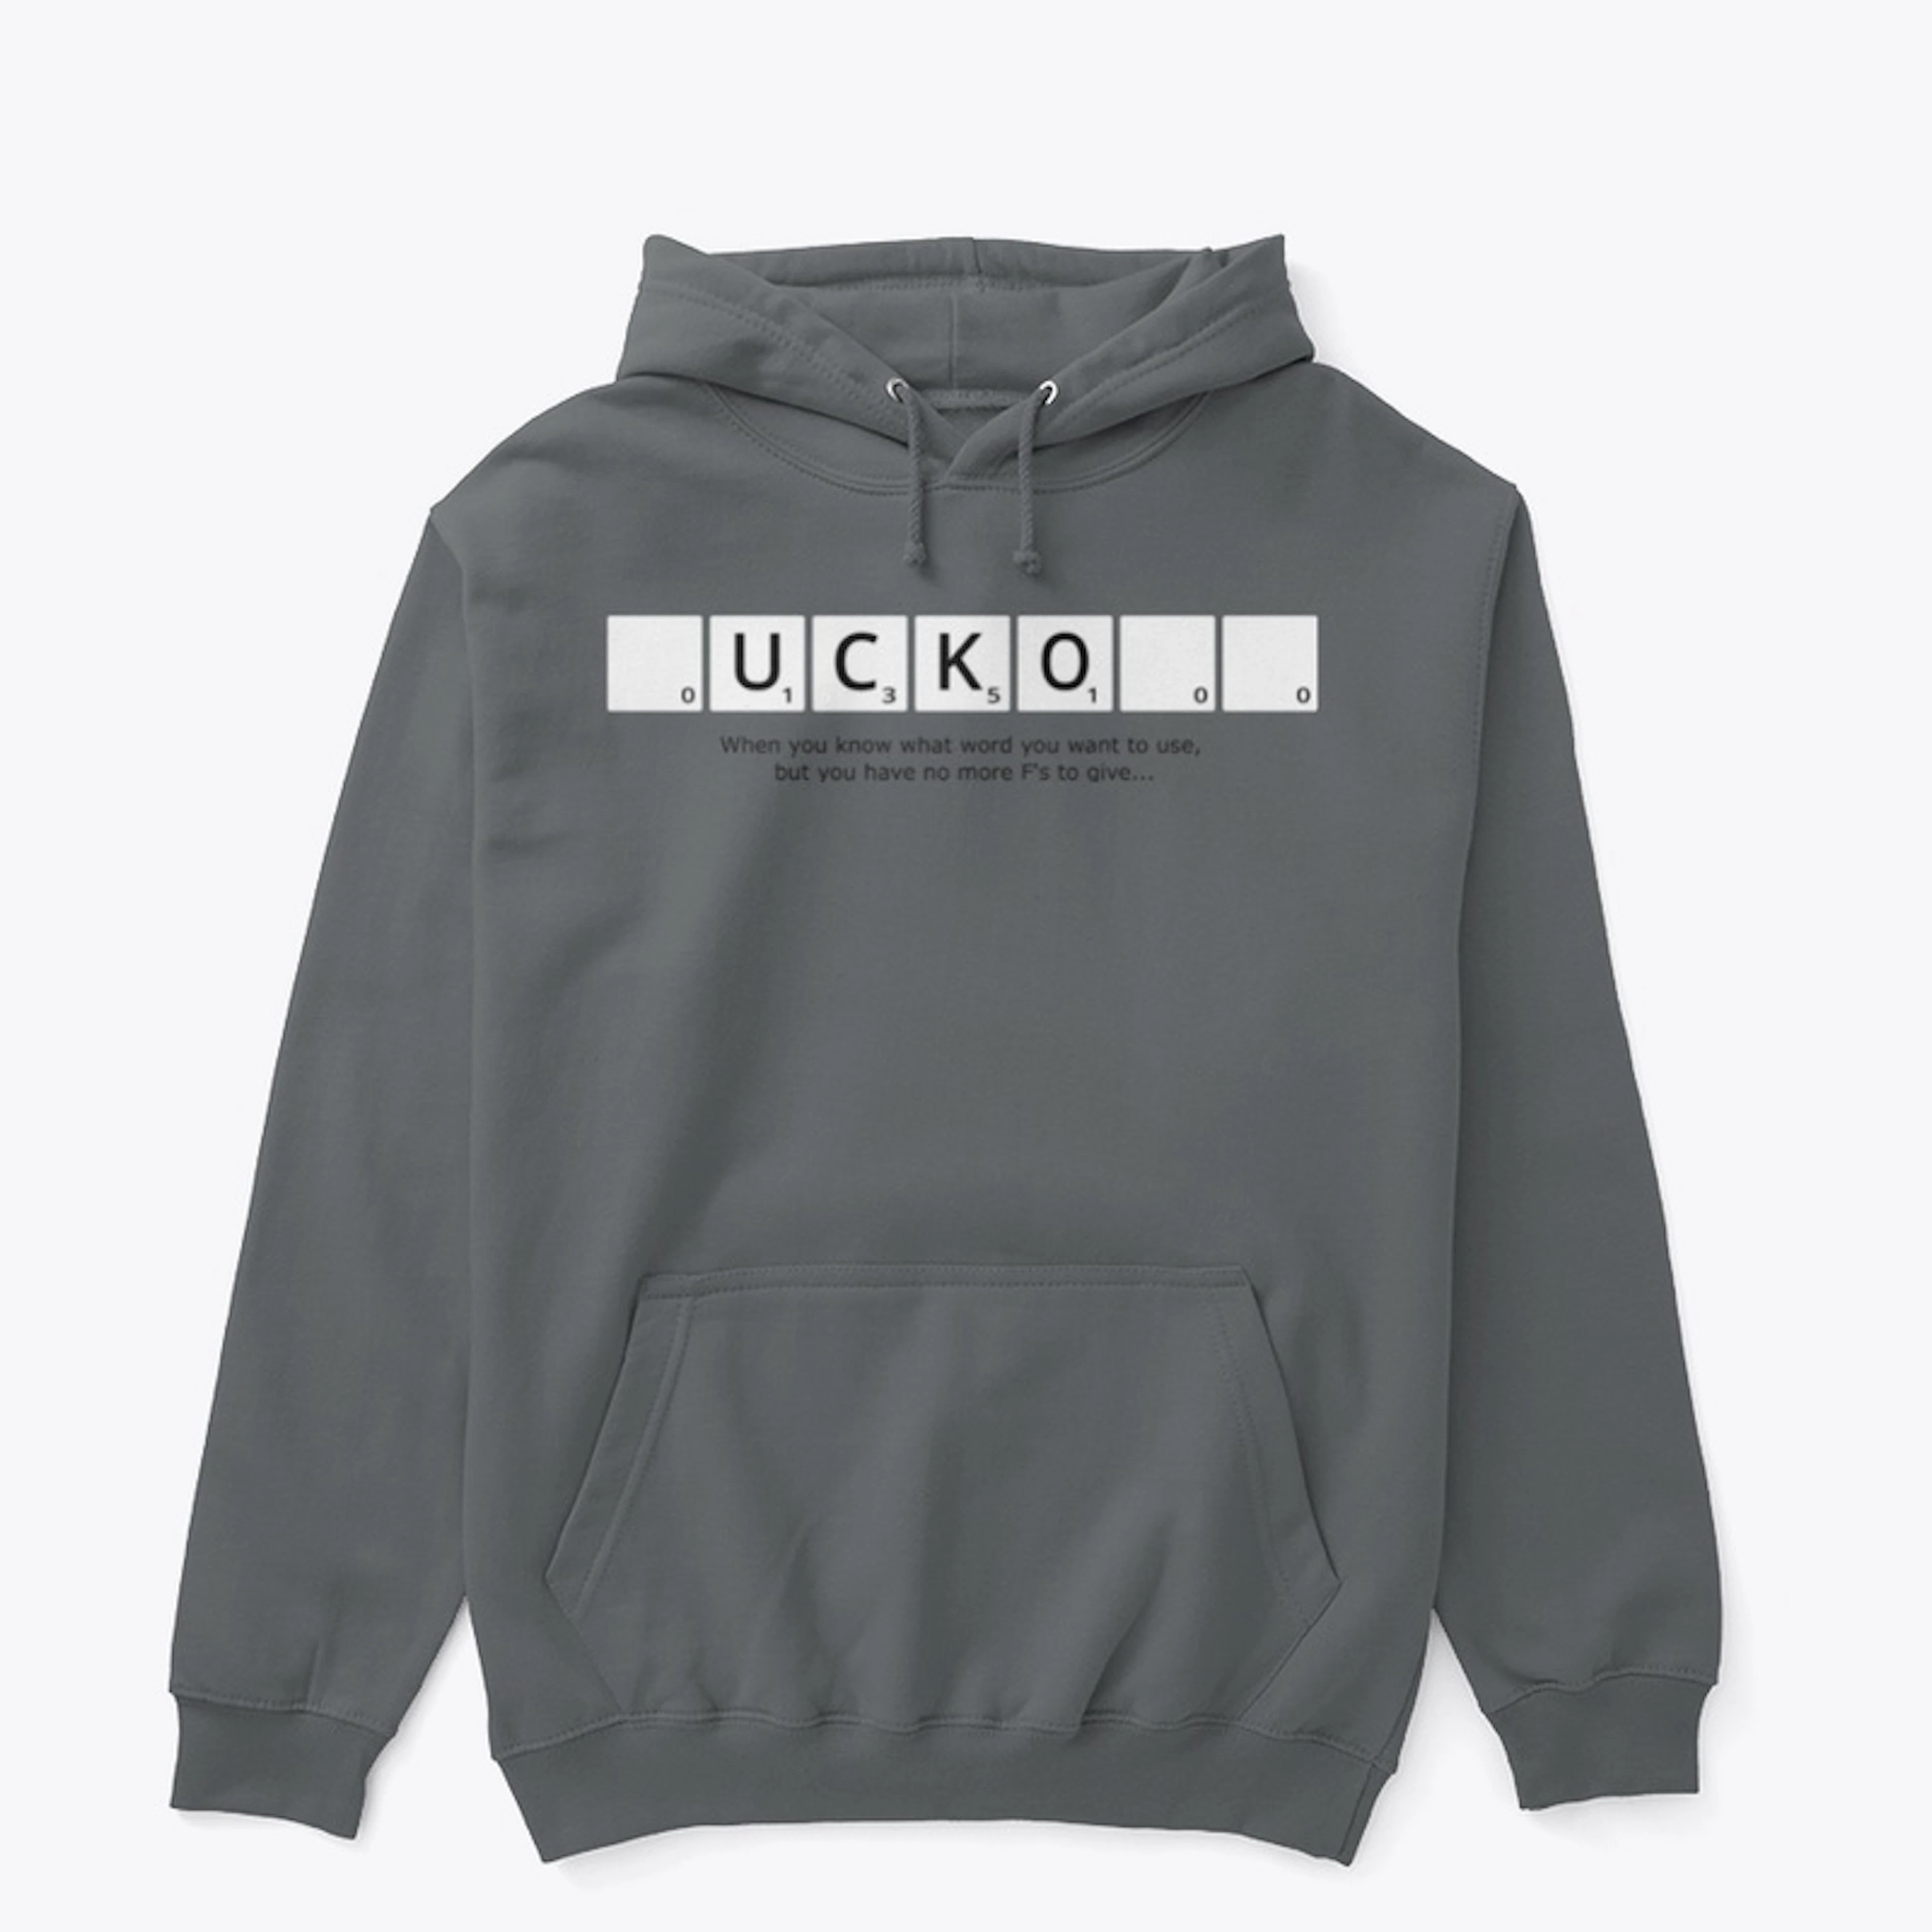 Adult _UCKO__ Scrabble Sweatshirt